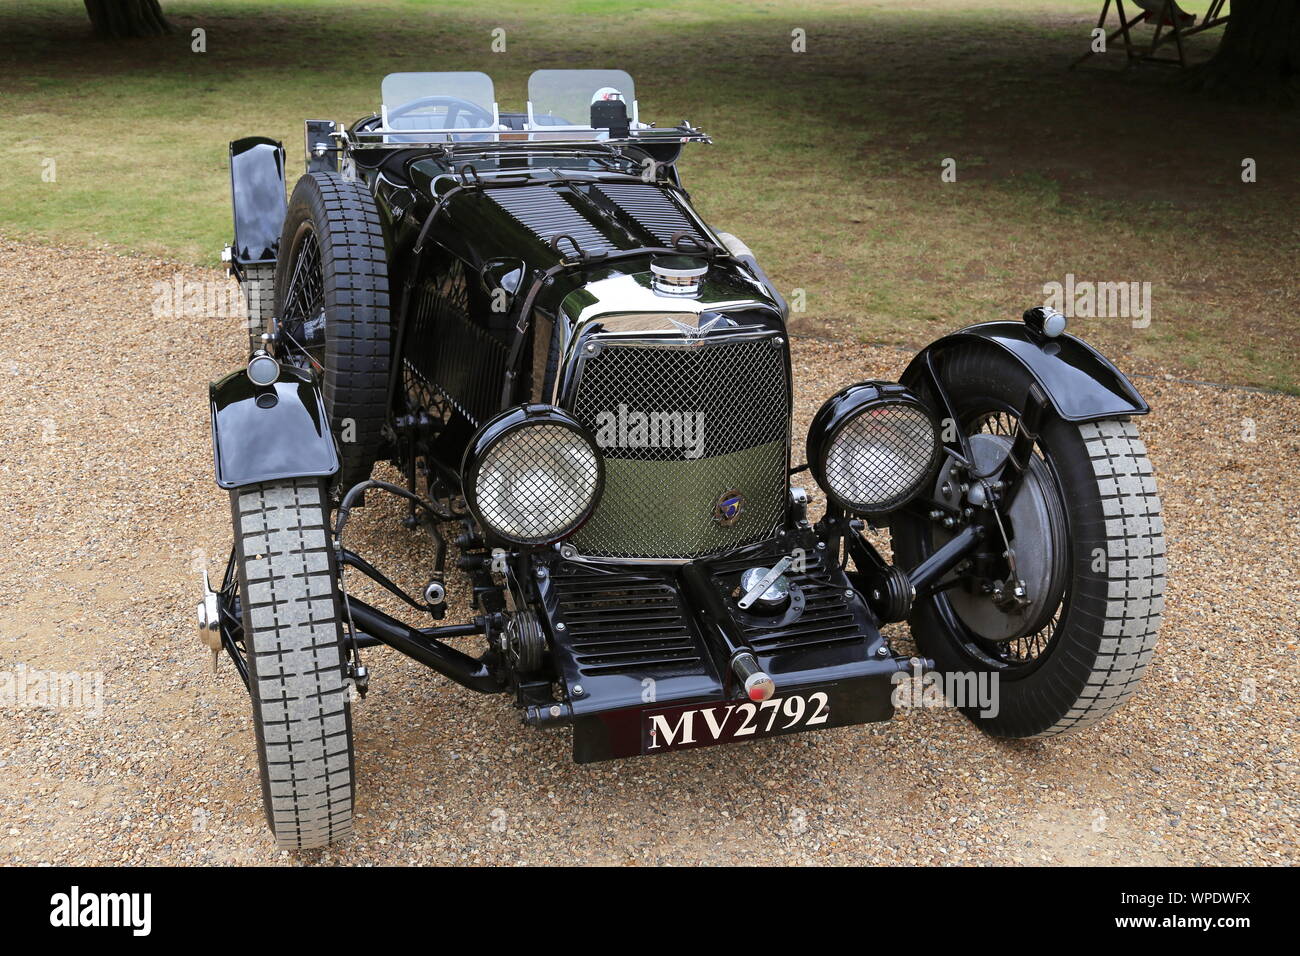 Aston Martin LM9 Le Mans leggero (1932), il Concours di eleganza 2019, Hampton Court Palace, East Molesey Surrey, Inghilterra, Gran Bretagna, Regno Unito, Europa Foto Stock